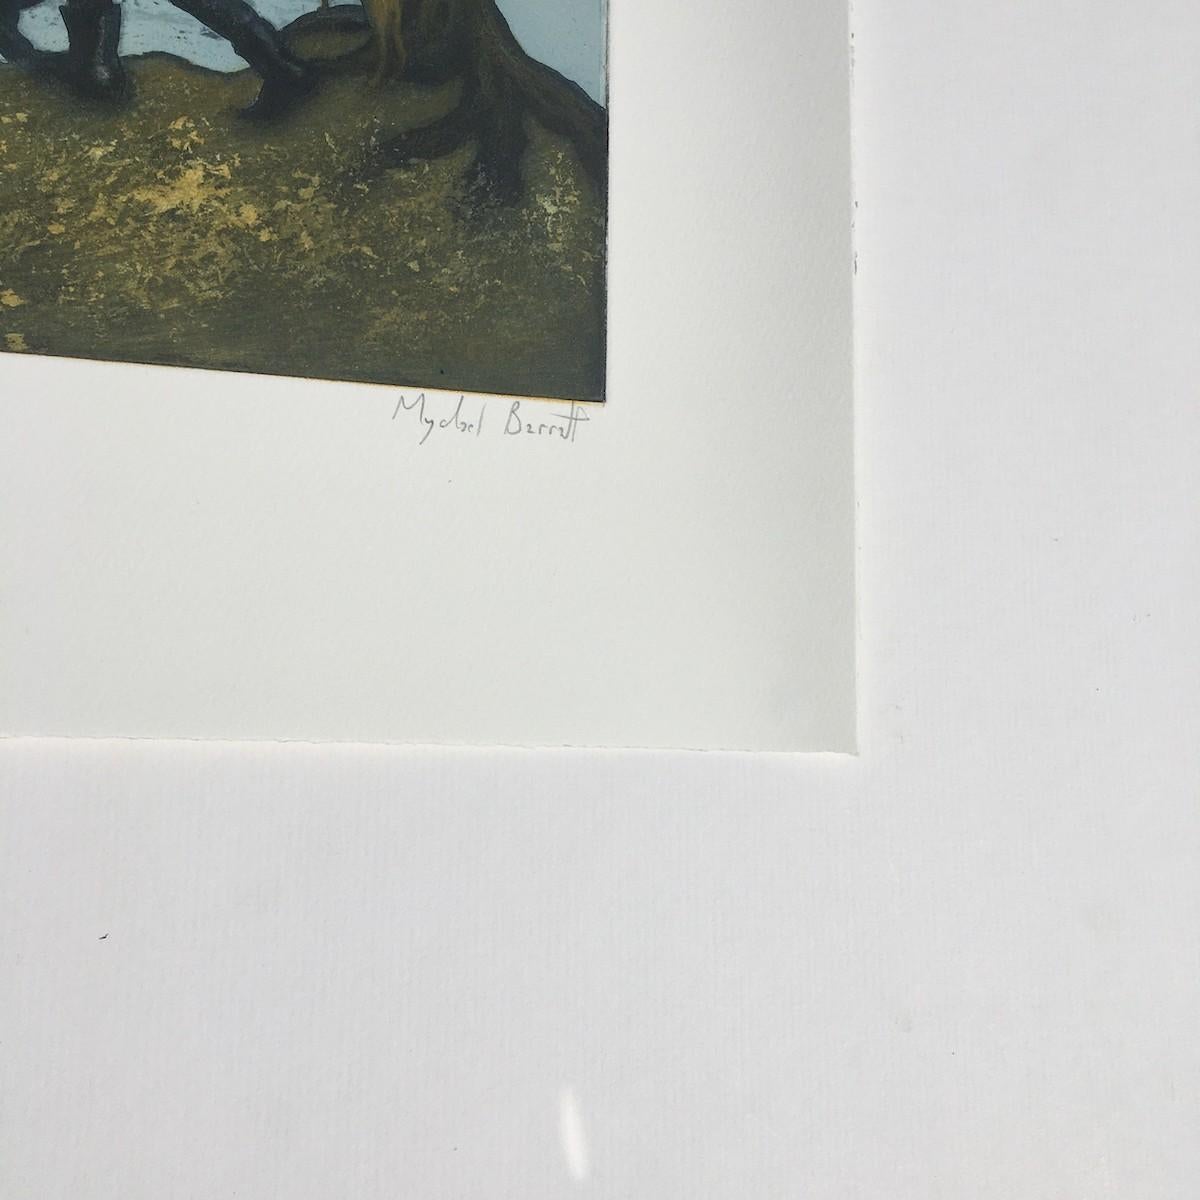 The Serpentine, Hyde Park - Autumn, after Bruegel est une gravure en édition limitée de Mychael Barratt. Whiting s'inspire de l'œuvre de Ravilious, The Vale of the White Horse, pour réaliser cette gravure pleine d'esprit.
Sérigraphie - Technique